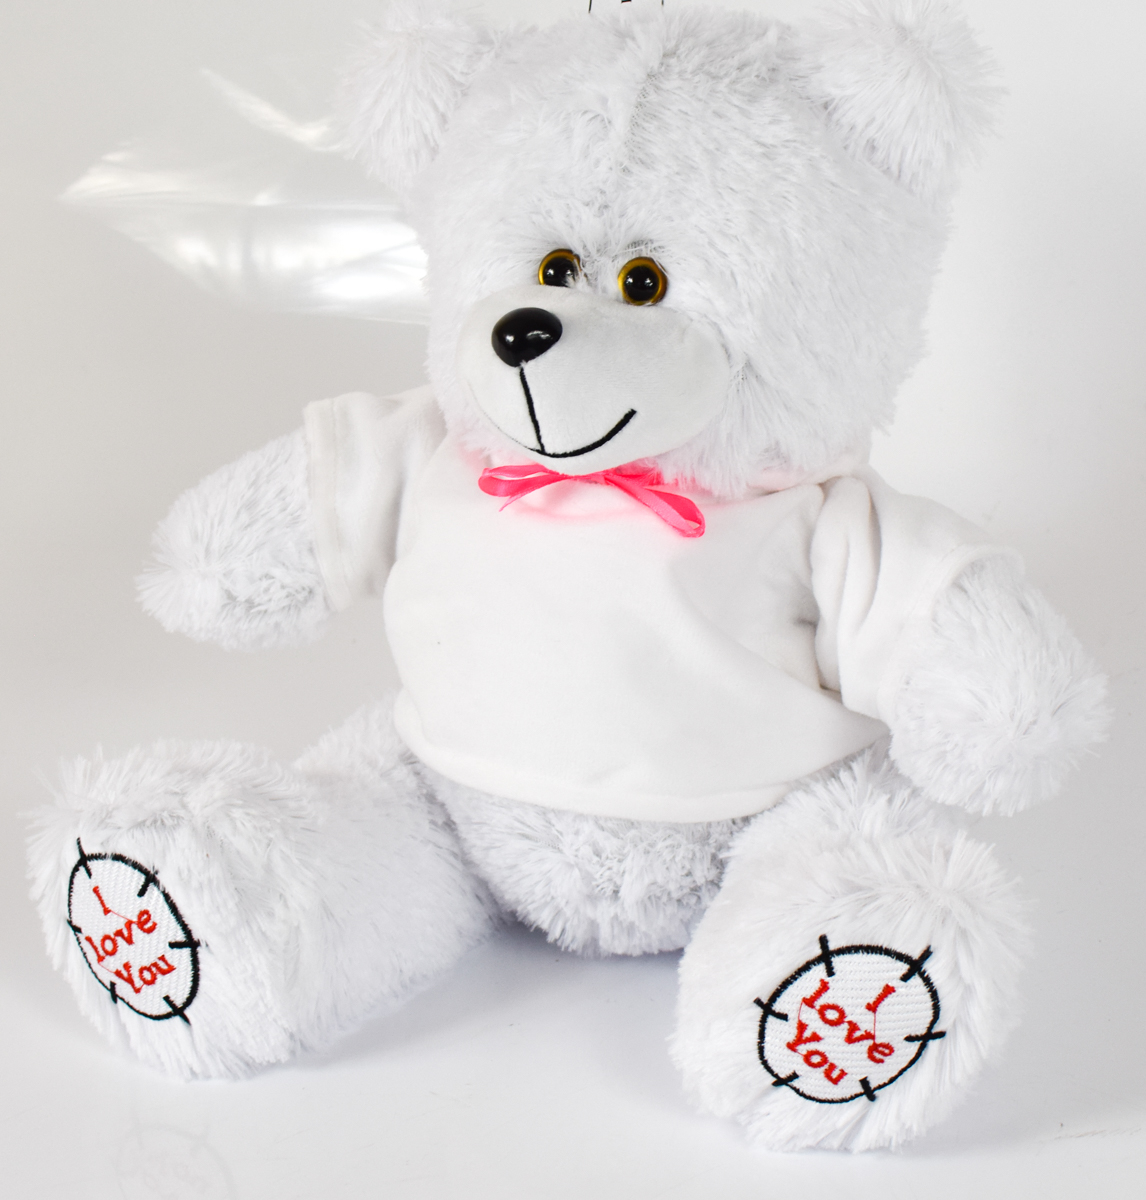 Мишка плюшевый мягкий медведь ТЕД  60 см. Мягкая игрушка медведь. Цвет белый в белой кофточке.